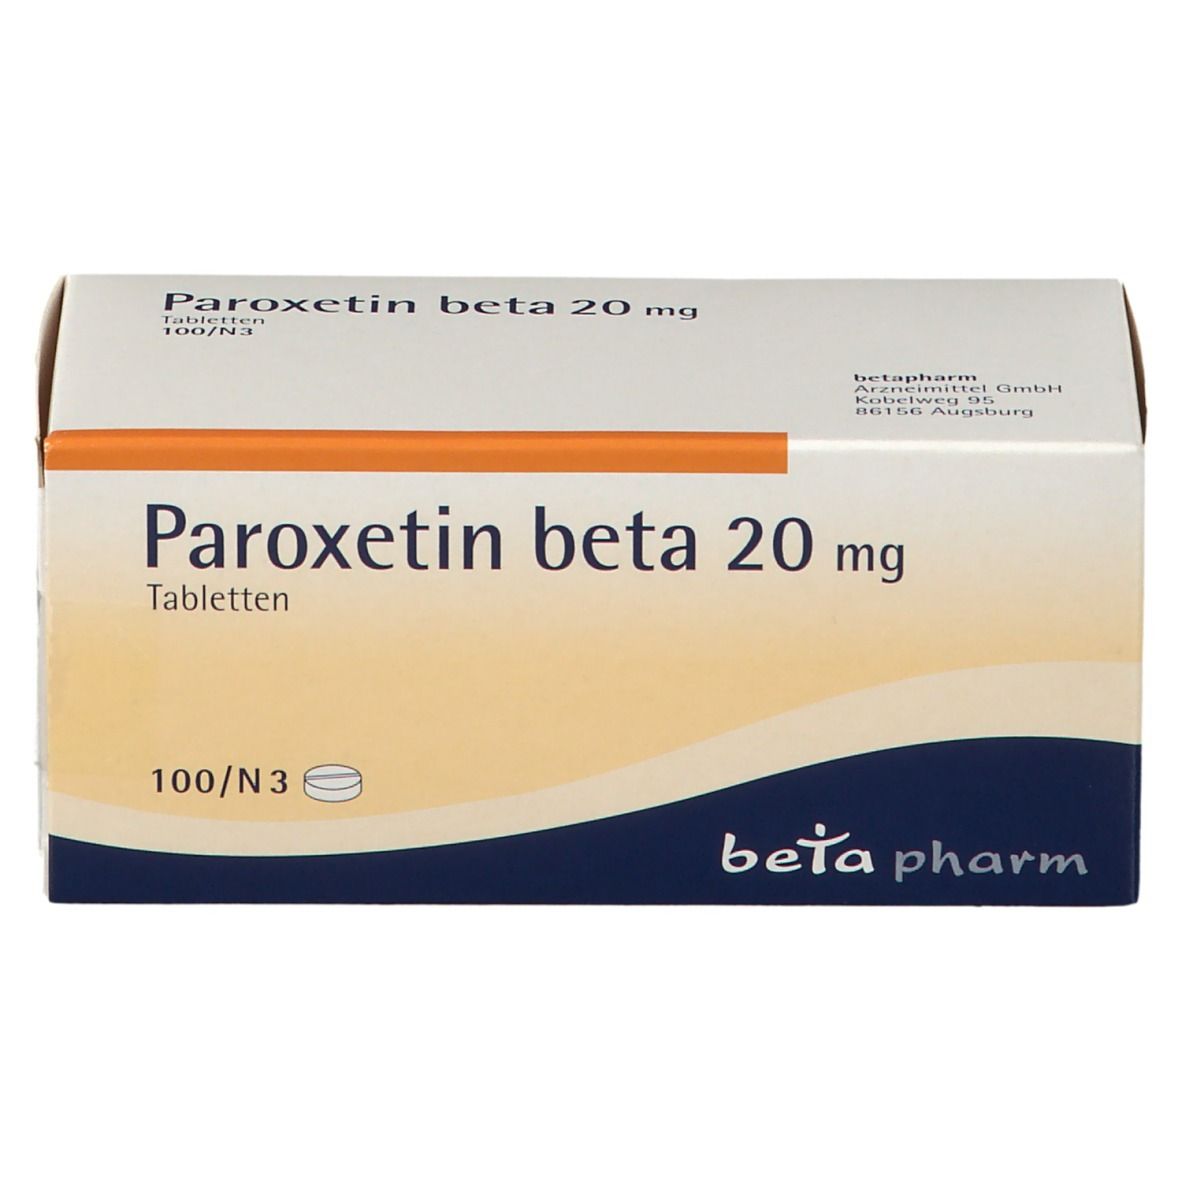 Paroxetin beta 20 mg